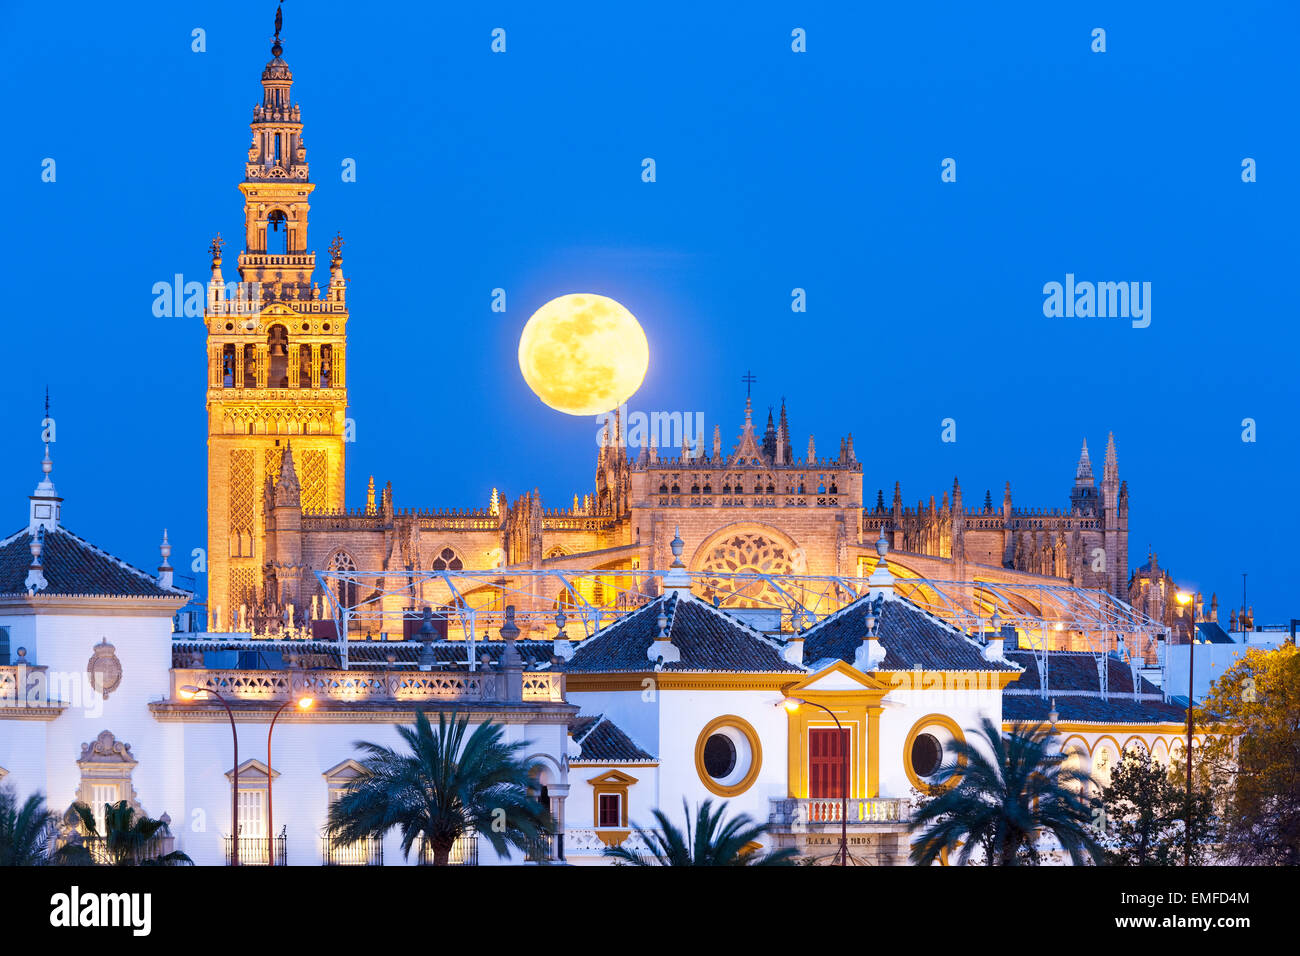 Siviglia Spagna Siviglia Skyline con la luna piena sorge dietro la torre Giralda, Cattedrale di Siviglia de Sevilla e Plaza de Toros Foto Stock